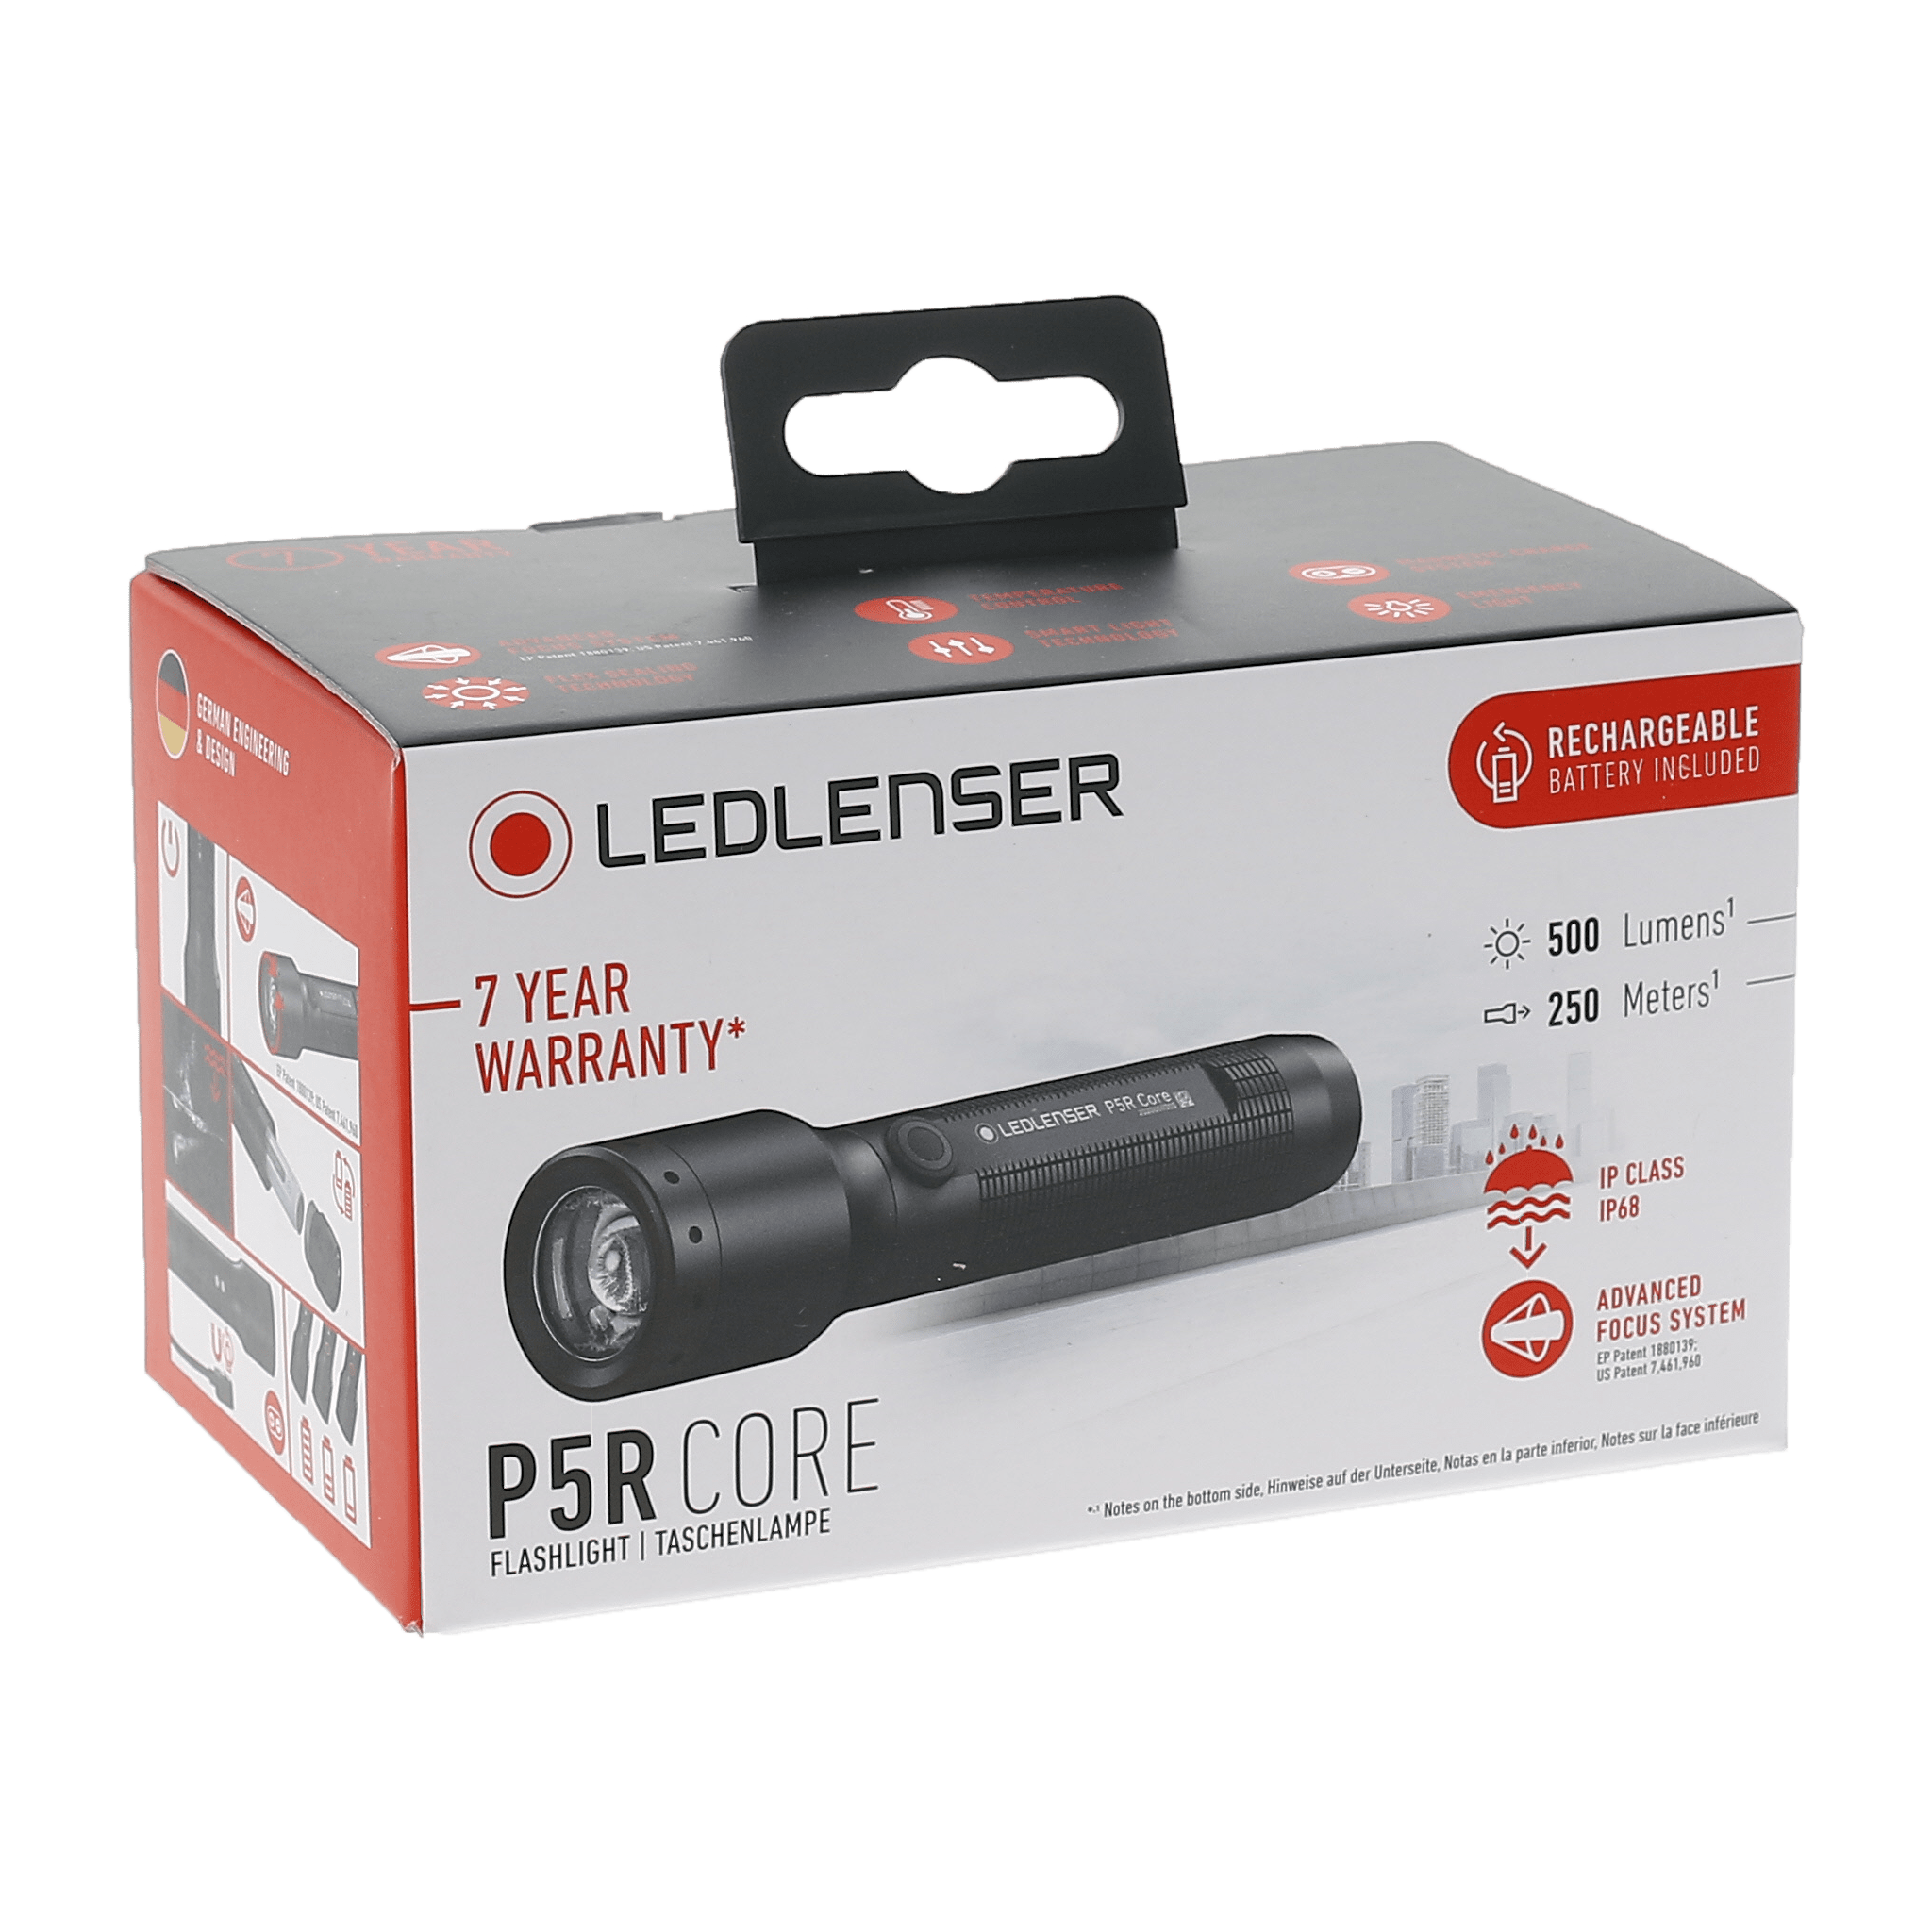 Ledlenser P5R Core Series Rechargeable Flashlight | Ledlenser USA